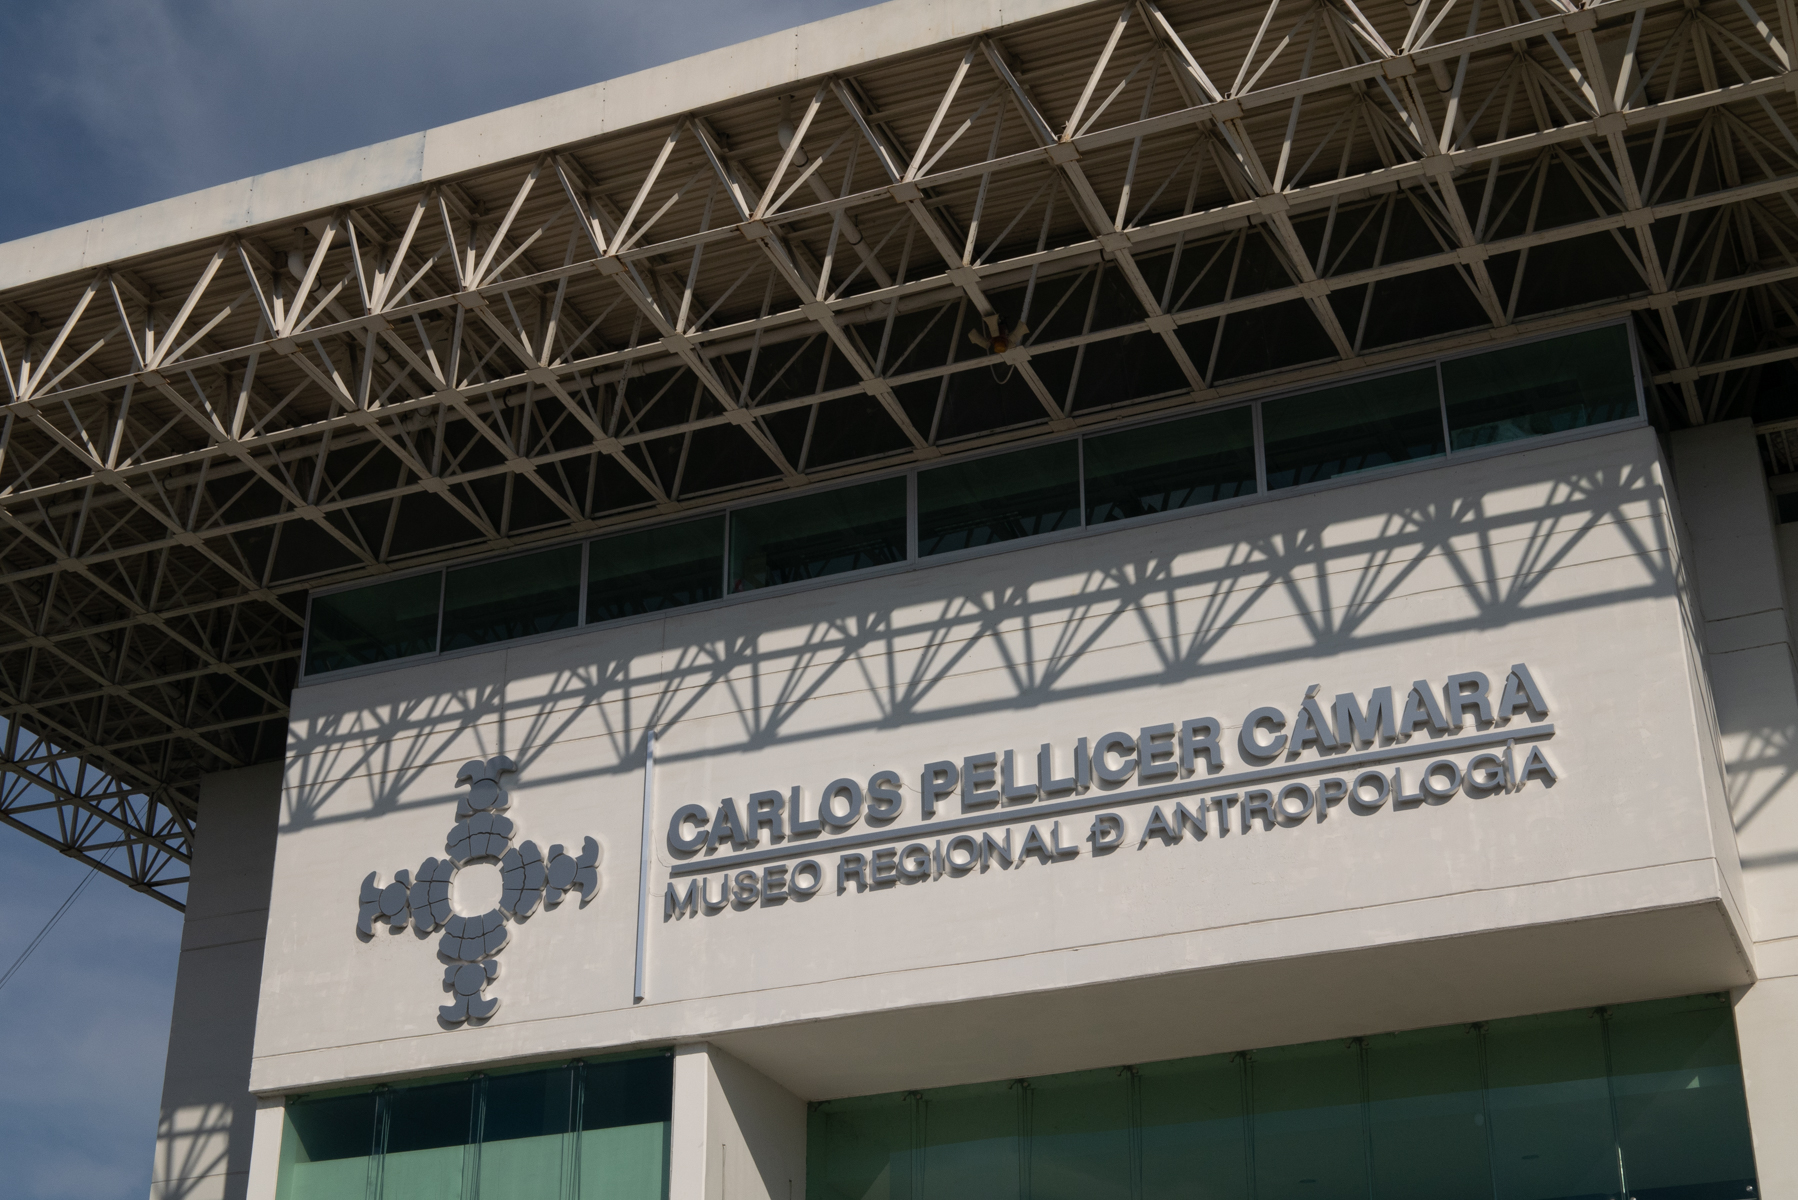 Carlos Pellicer museum facade